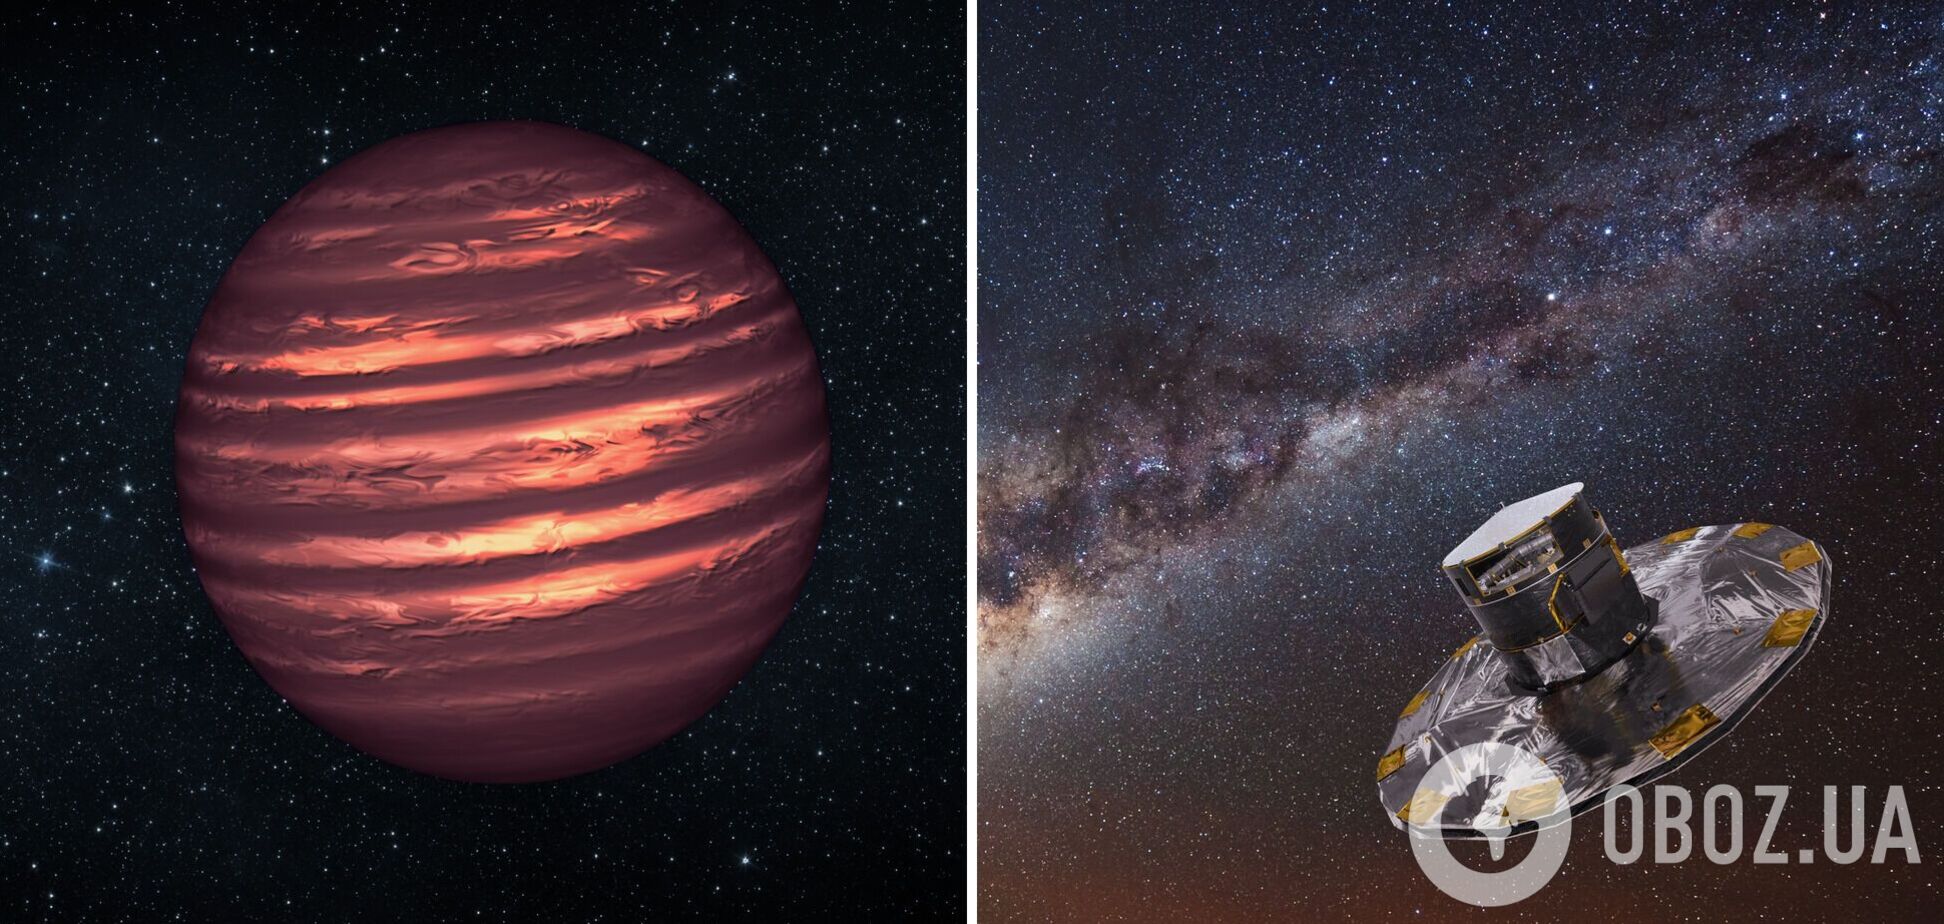 Ученые обнаружили новую планету с секретом внутри ядра: что известно